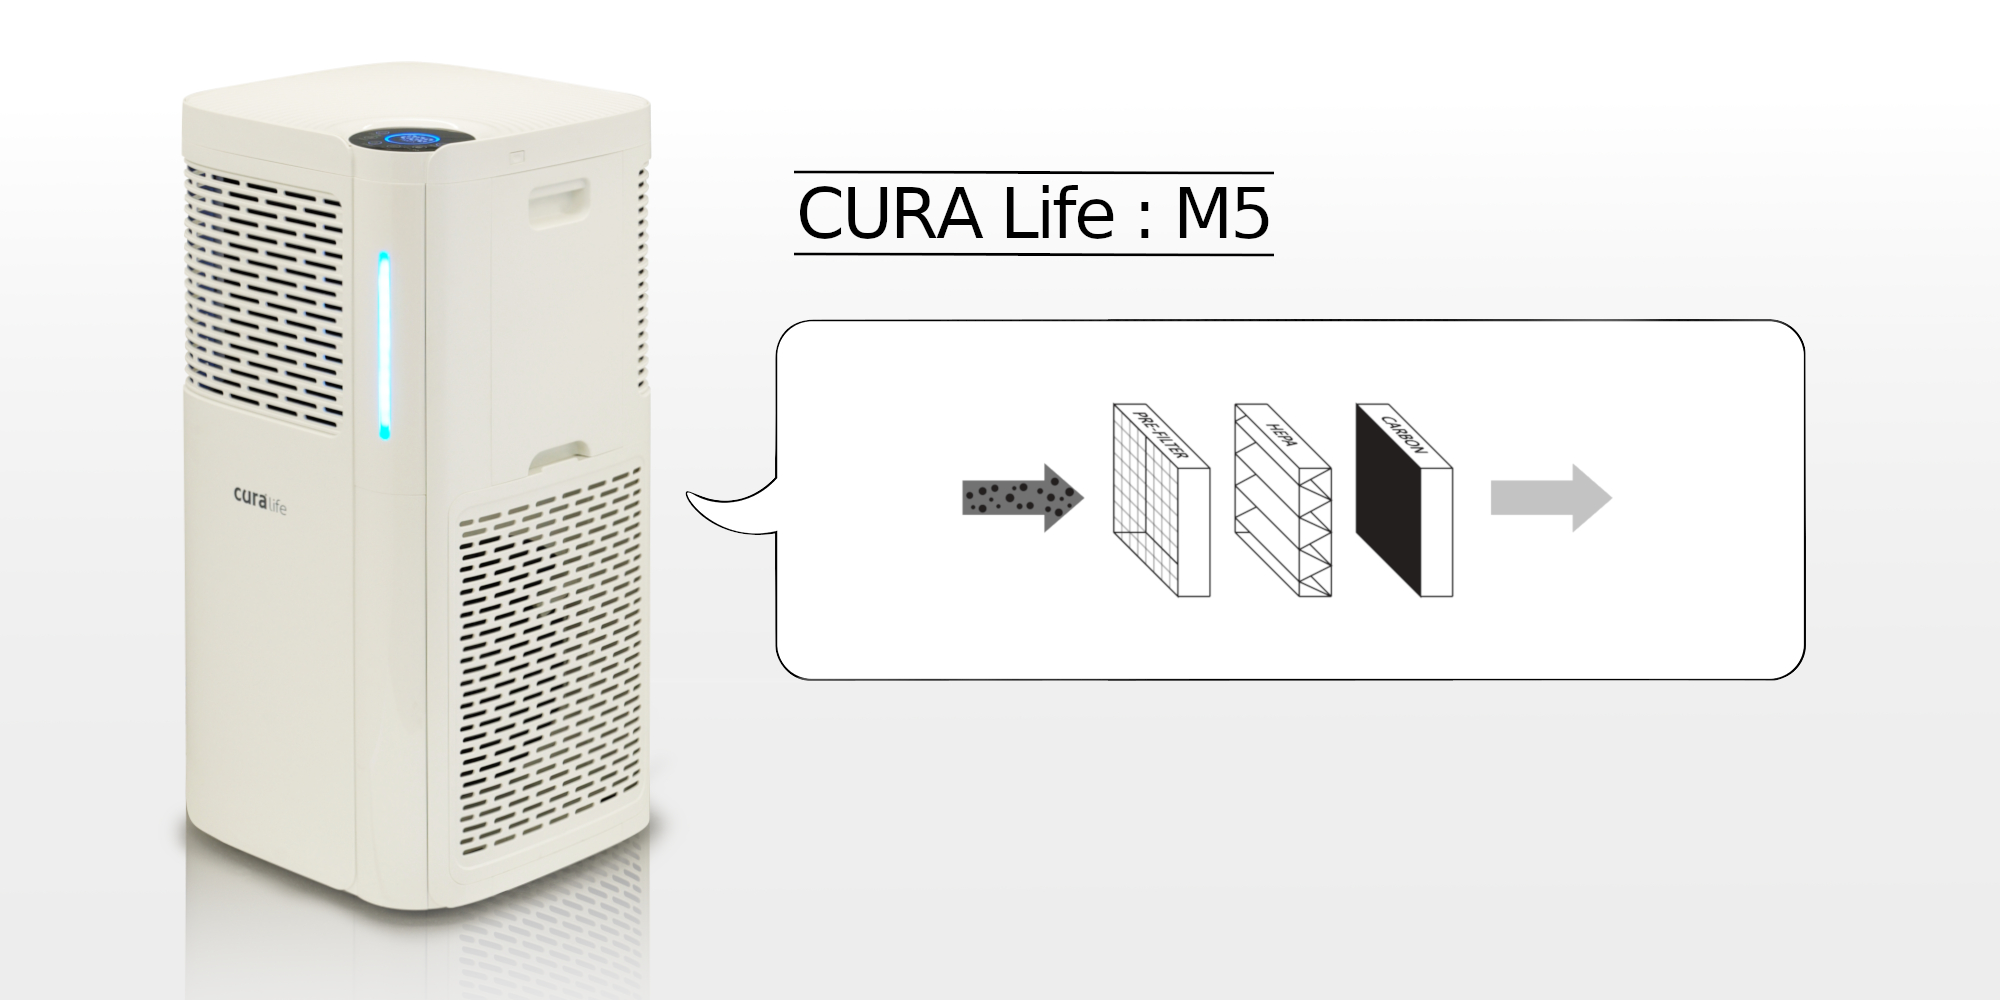 เครื่องฟอกอากาศ กรองดักกำจัดฝุ่นด้วย Pre-filter และ HEPA filter ดักจับกลิ่นด้วย Activated Carbon ยี่ห้อ CURA Life รุ่น M5 สามารถดักจับฝุ่นละเอียดระดับ PM 2.5 ได้มากกว่า 99%